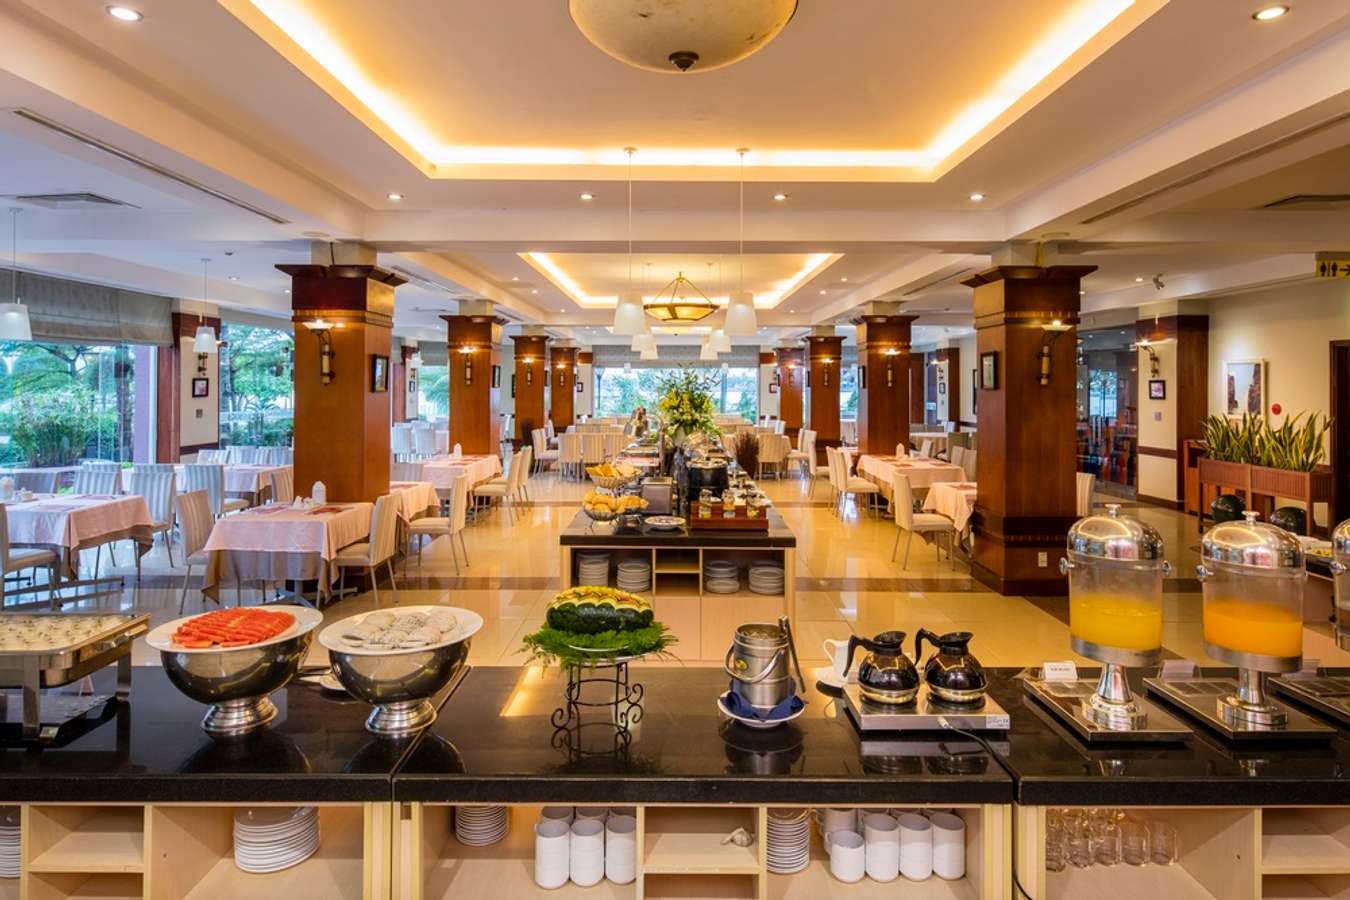 Sài Gòn – Quảng Bình Hotel